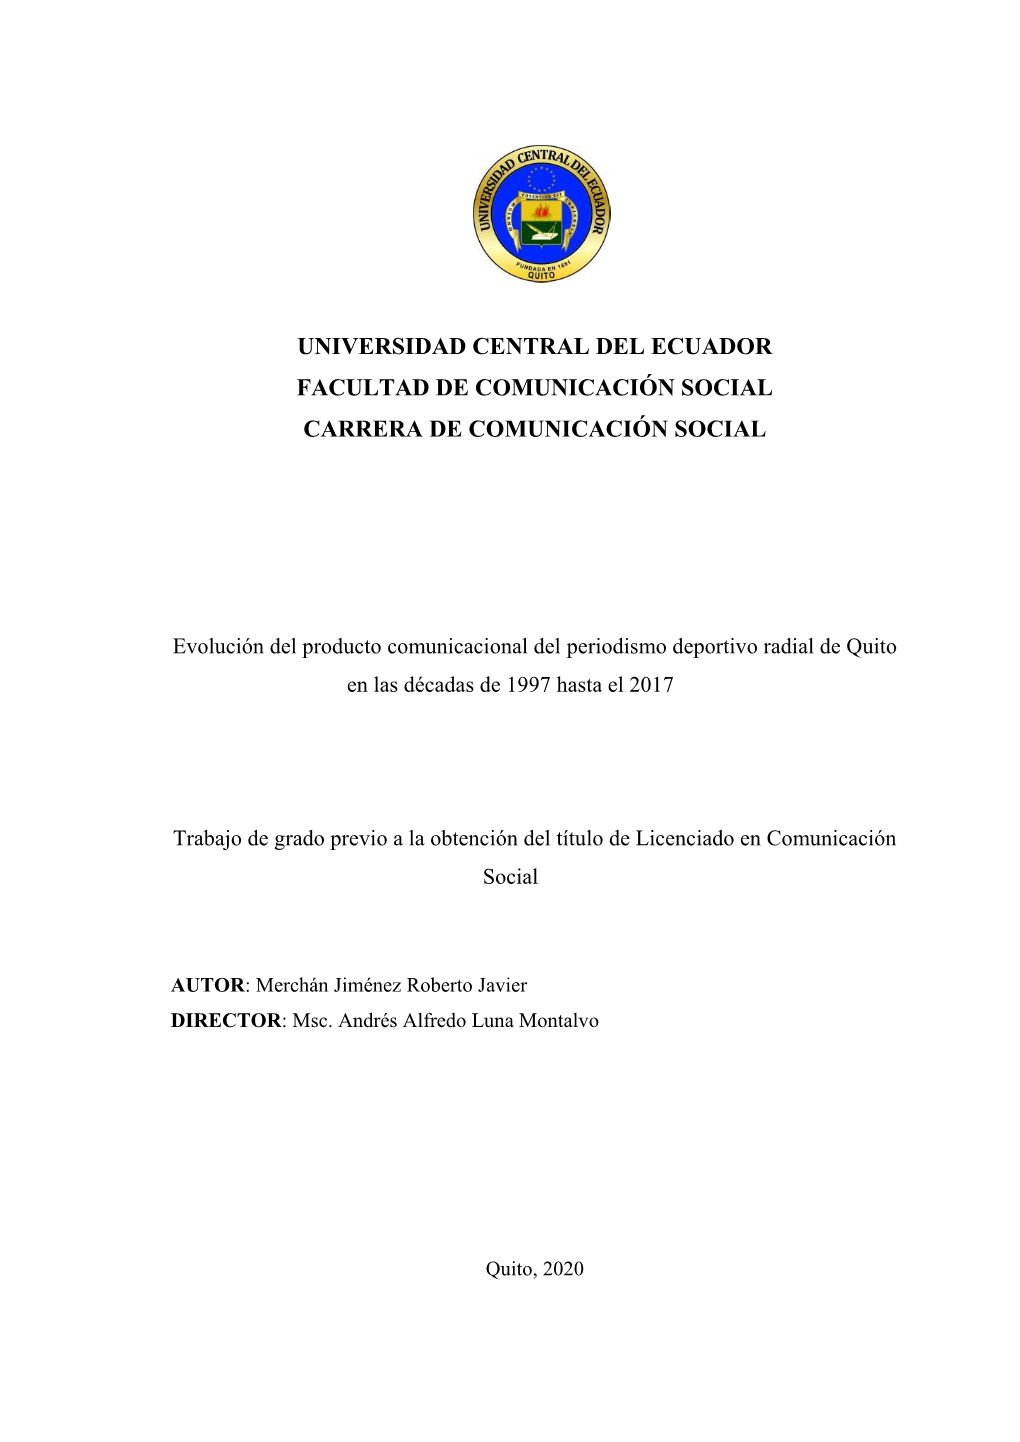 Evolución Del Producto Comunicacional Del Periodismo Deportivo Radial De Quito En Las Décadas De 1997 Hasta El 2017